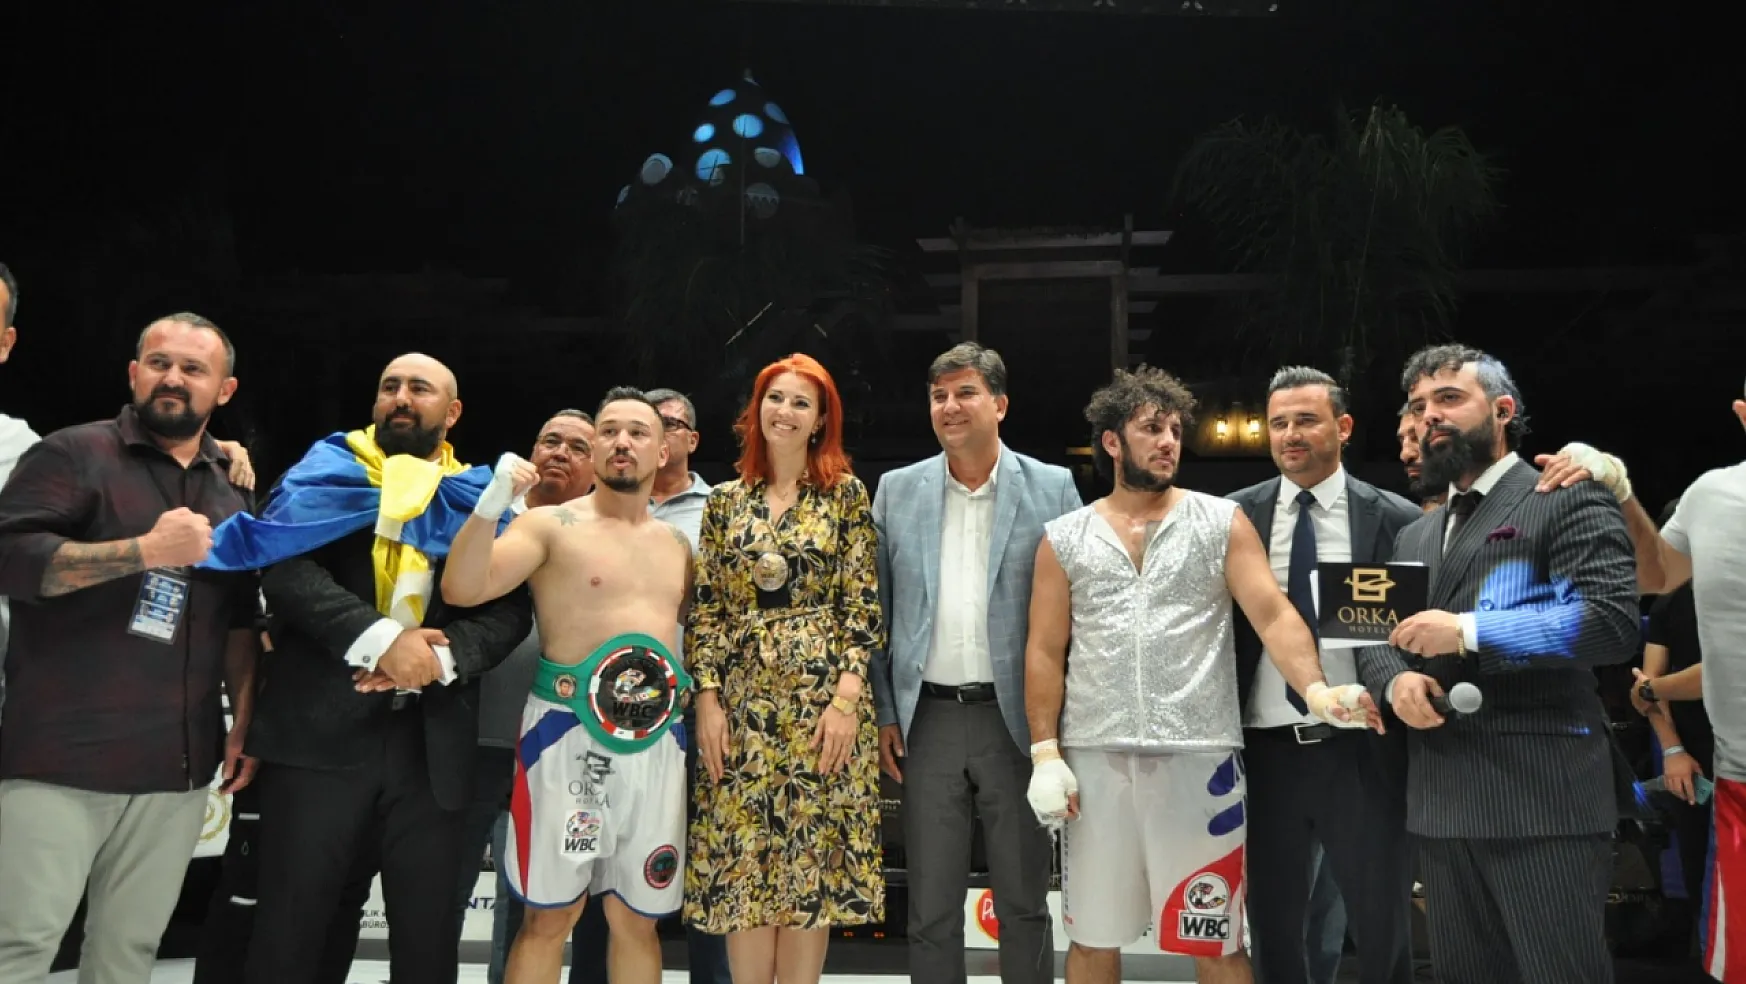 Fethiye WBC profesyonel boks gecesinde Kubilay Alcu gümüş kemeri kazandı